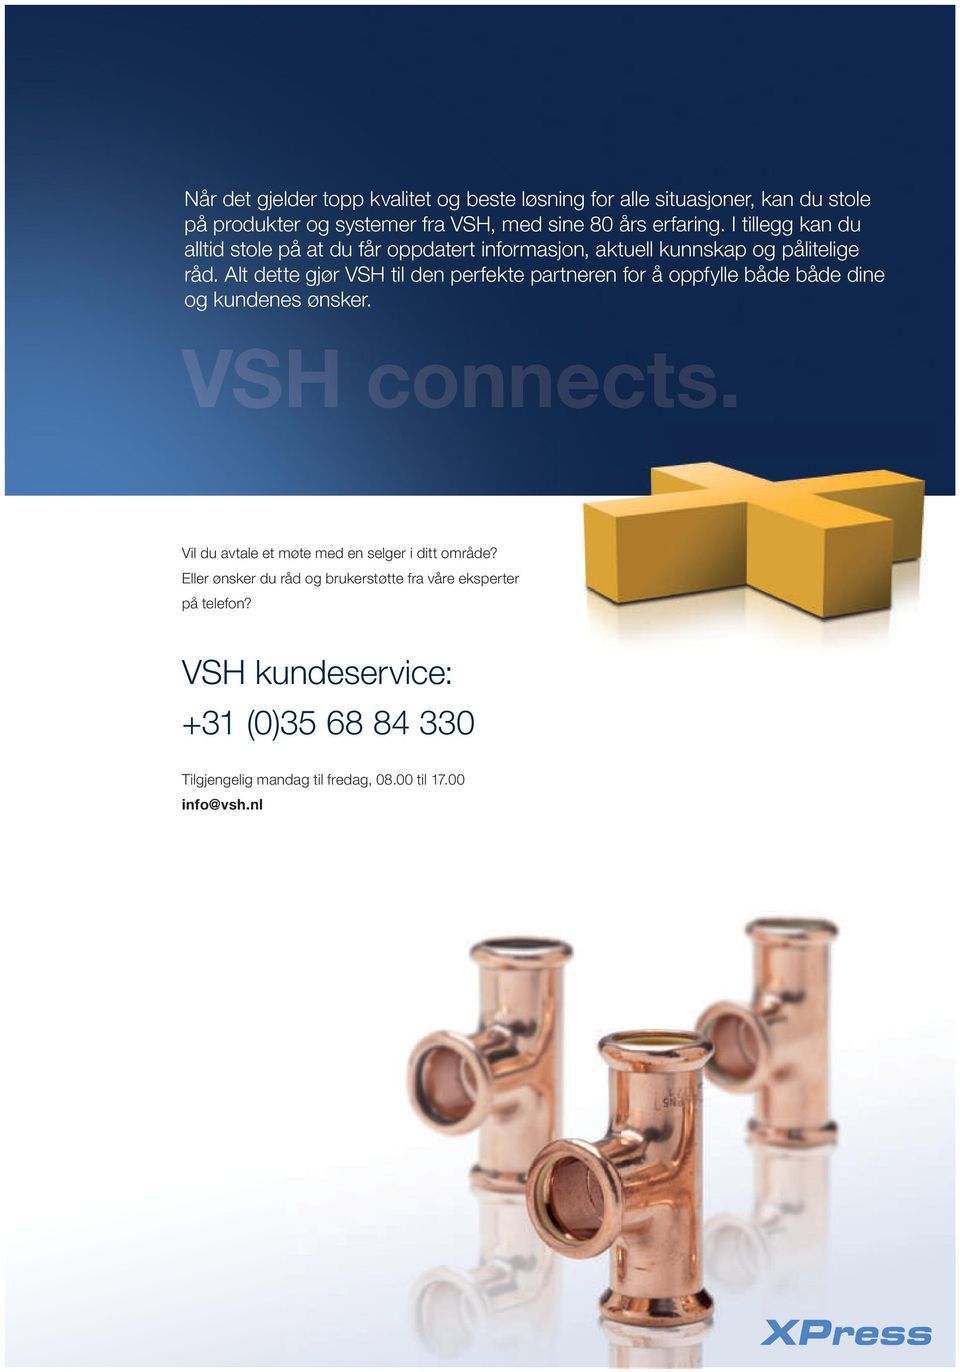 Alt dette gjør VSH til den perfekte partneren for å oppfylle både både dine og kundenes ønsker. VSH connects.